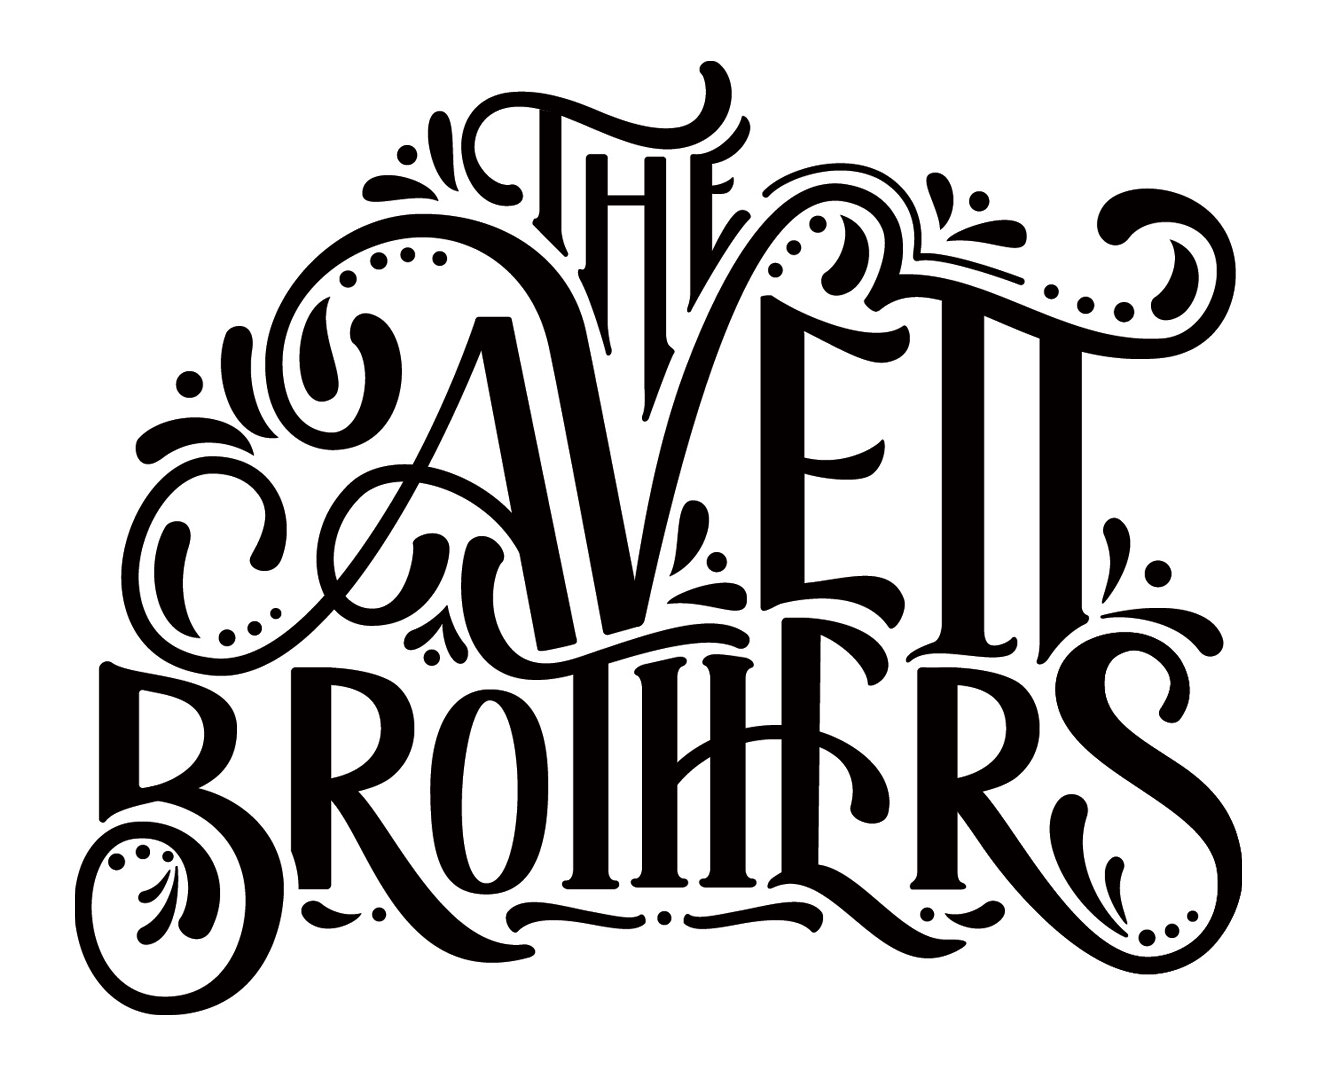 AvettBrothers_Final_Black.jpg